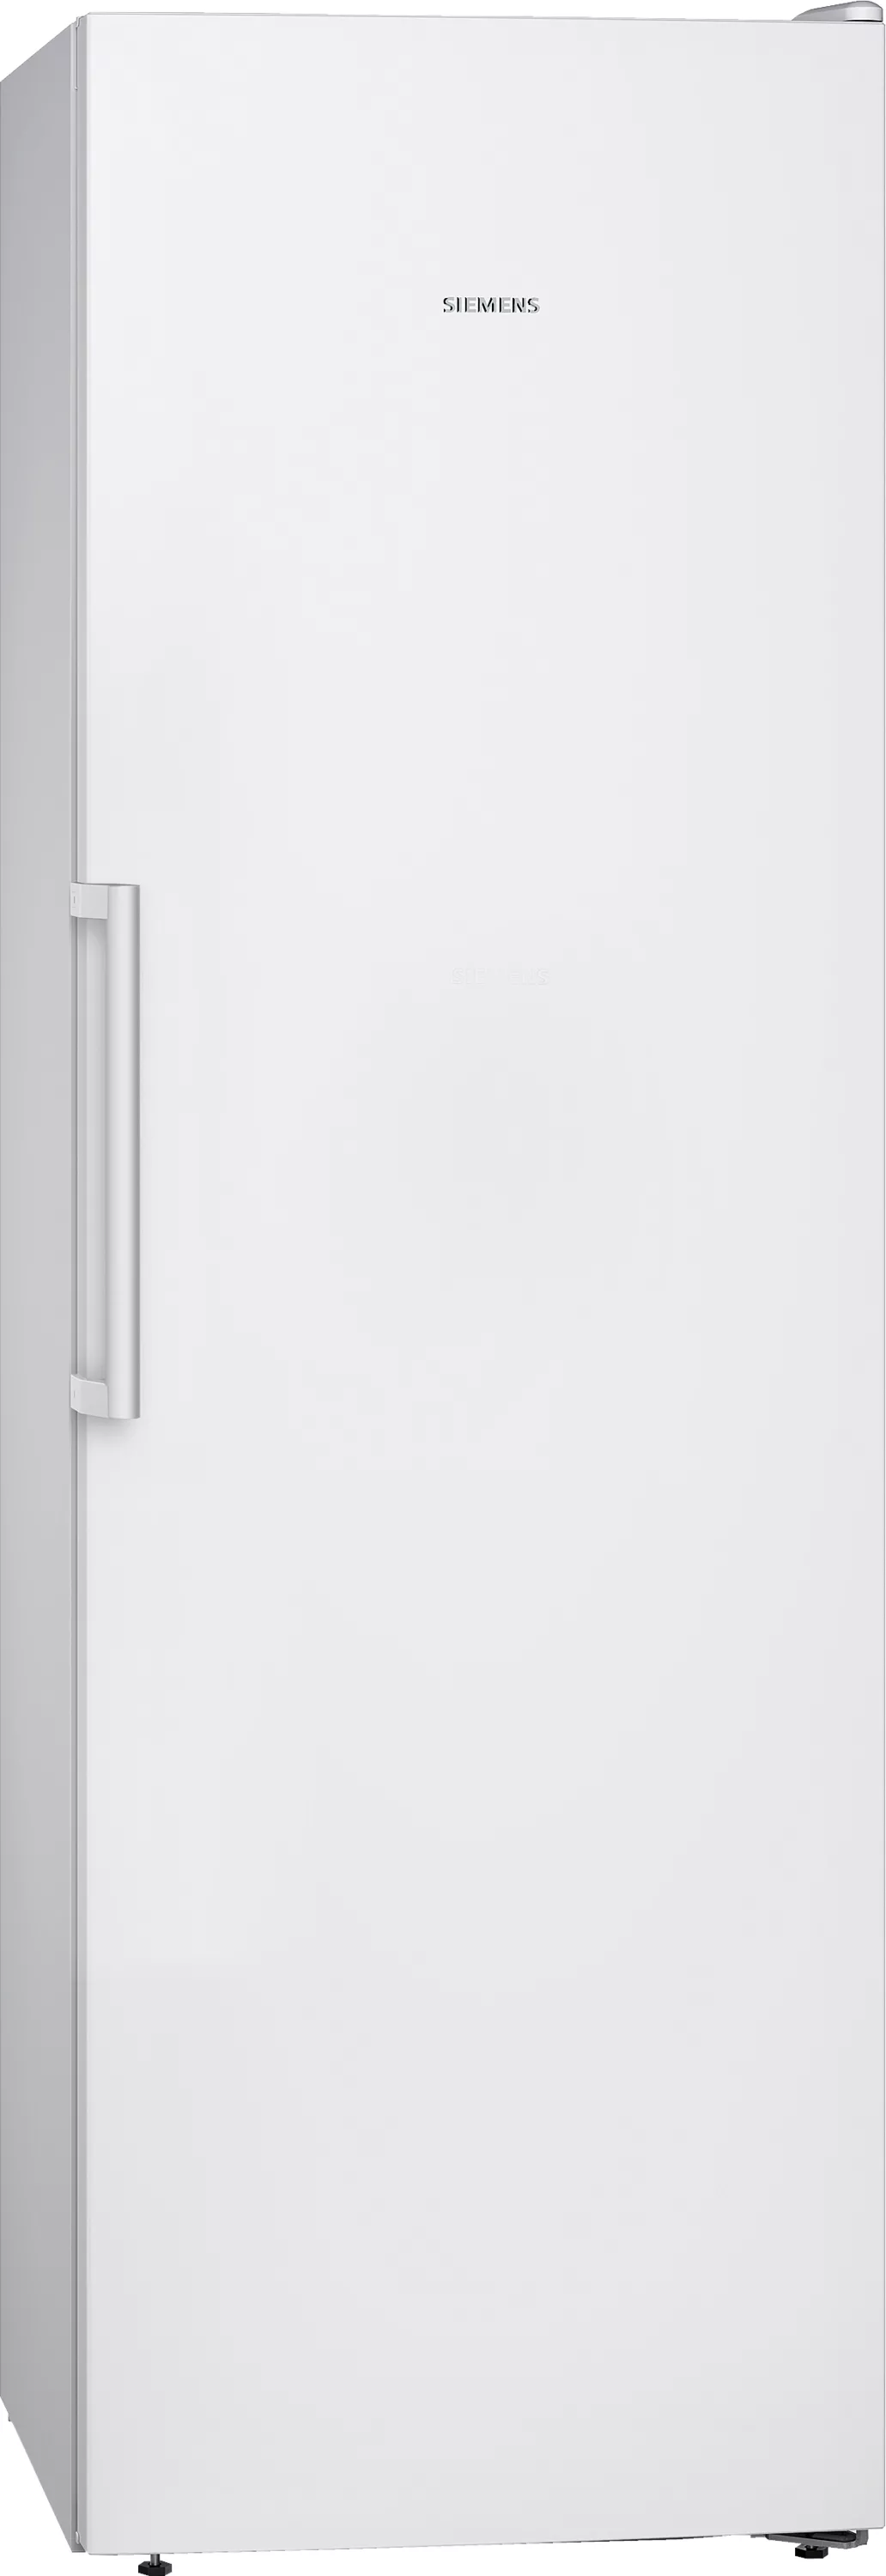 Siemens iQ300, Freistehender Gefrierschrank, 186 x 60 cm, Weiß, GS36NVWFP